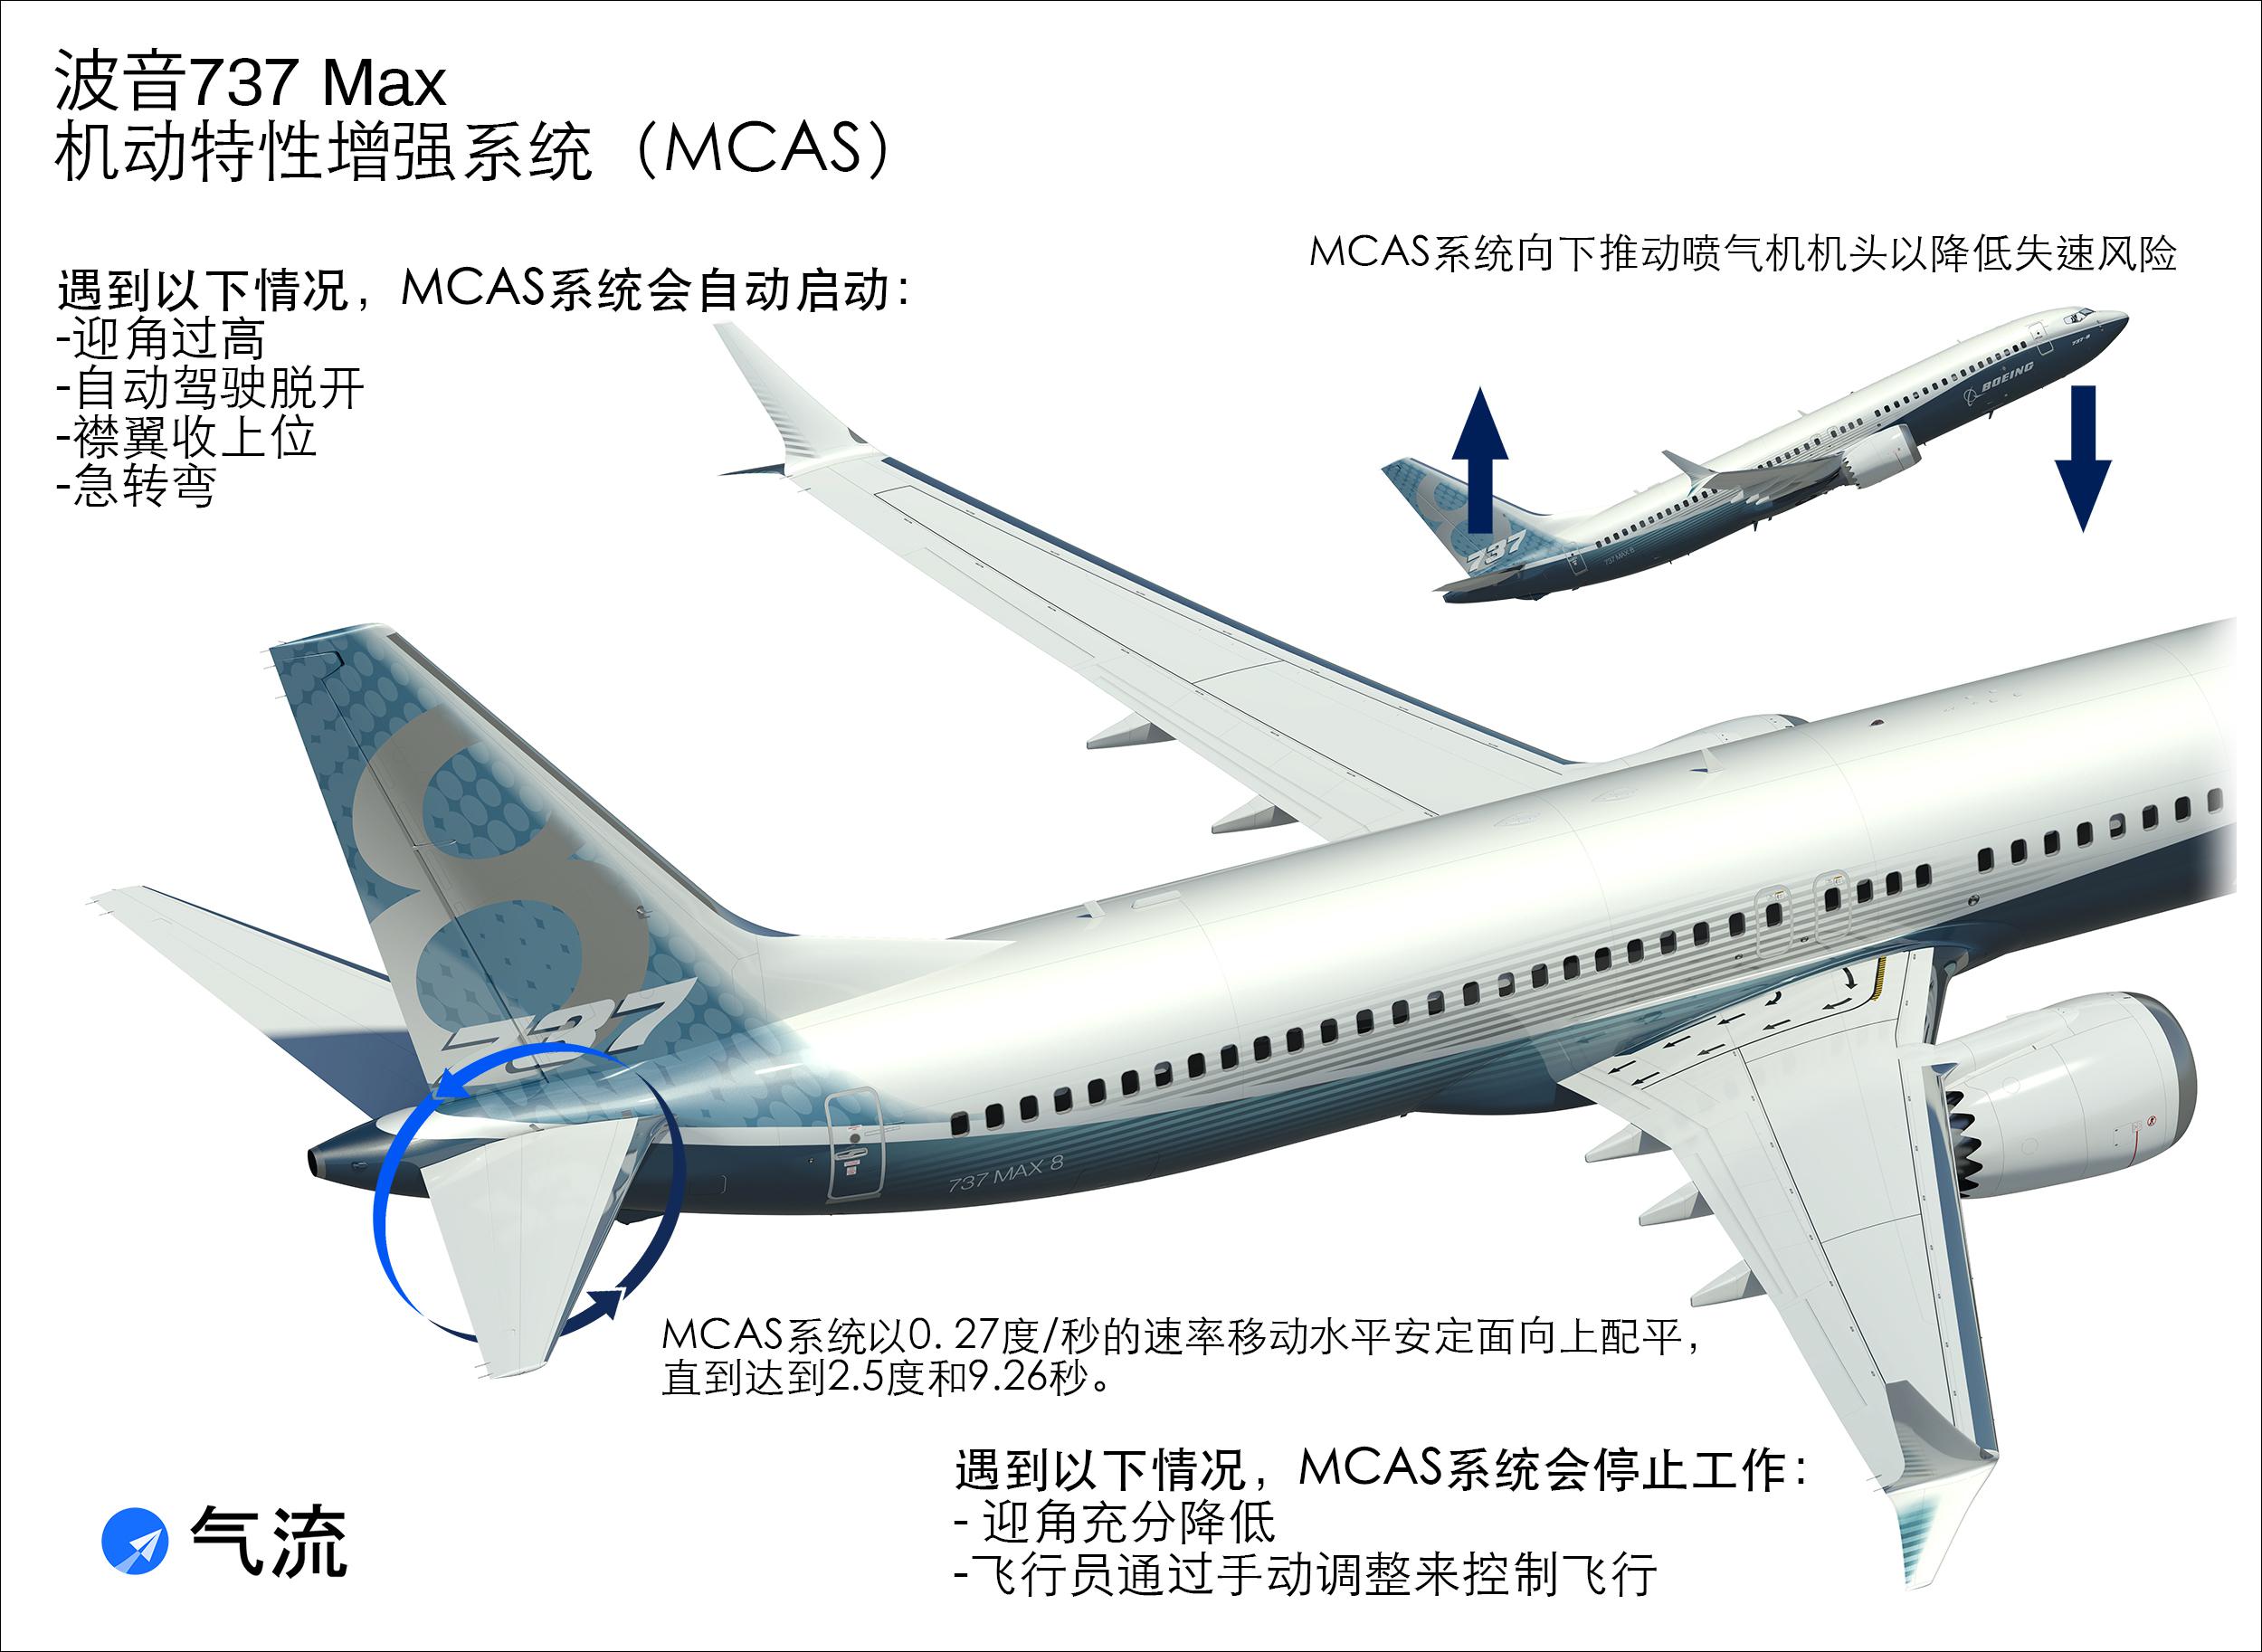 8上的机动特性增强系统(mcas)),蓝圈处即是水平尾翼不同于空客飞机